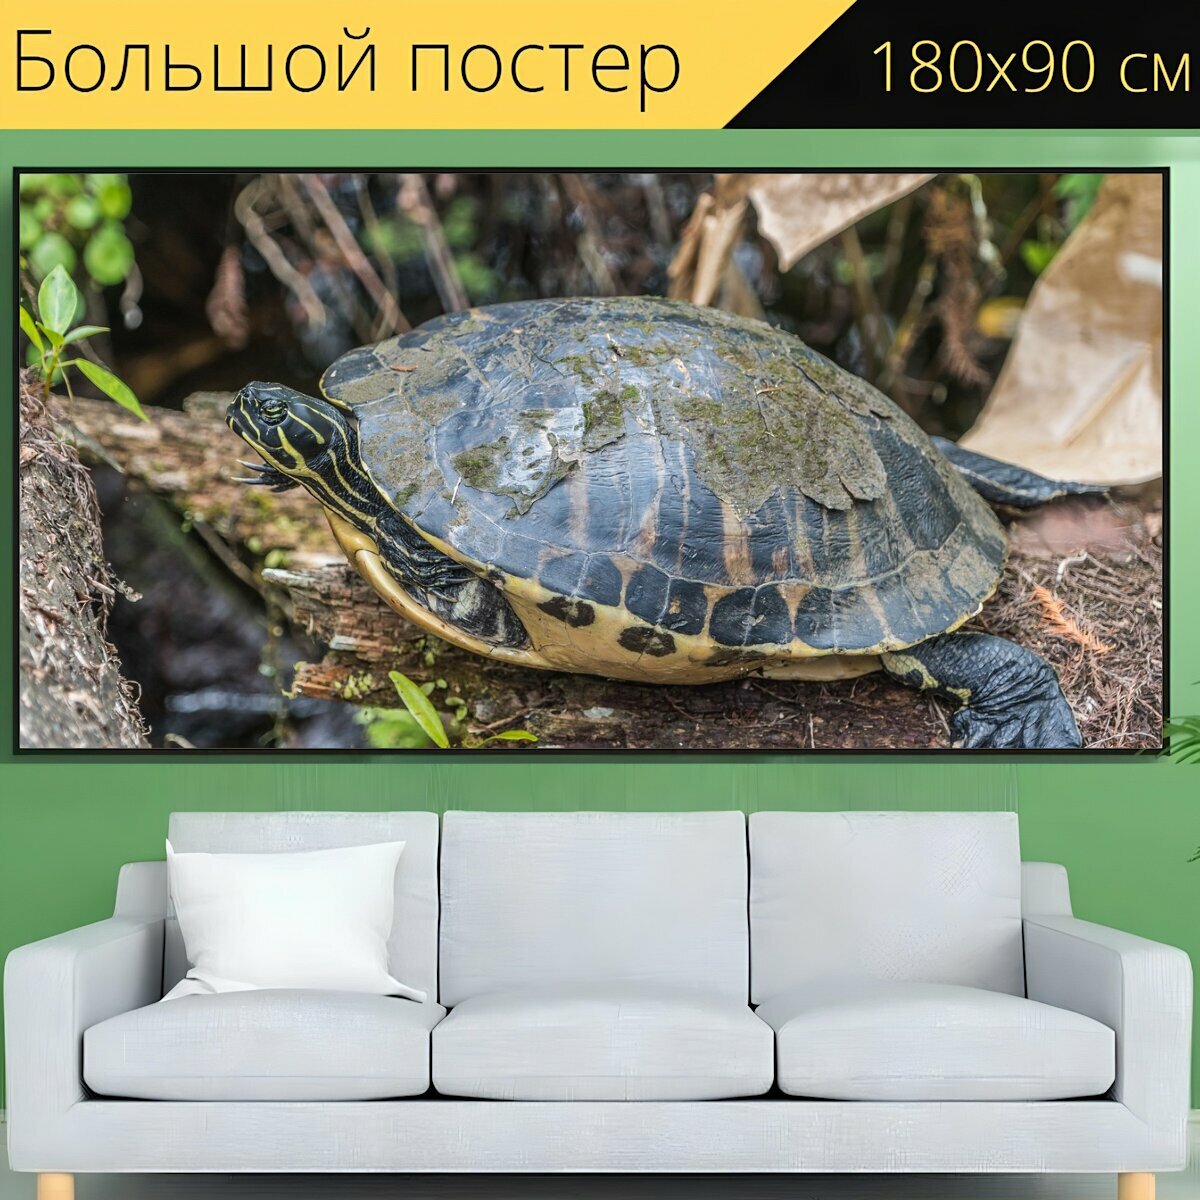 Большой постер "Черепаха, рептилия, лес" 180 x 90 см. для интерьера